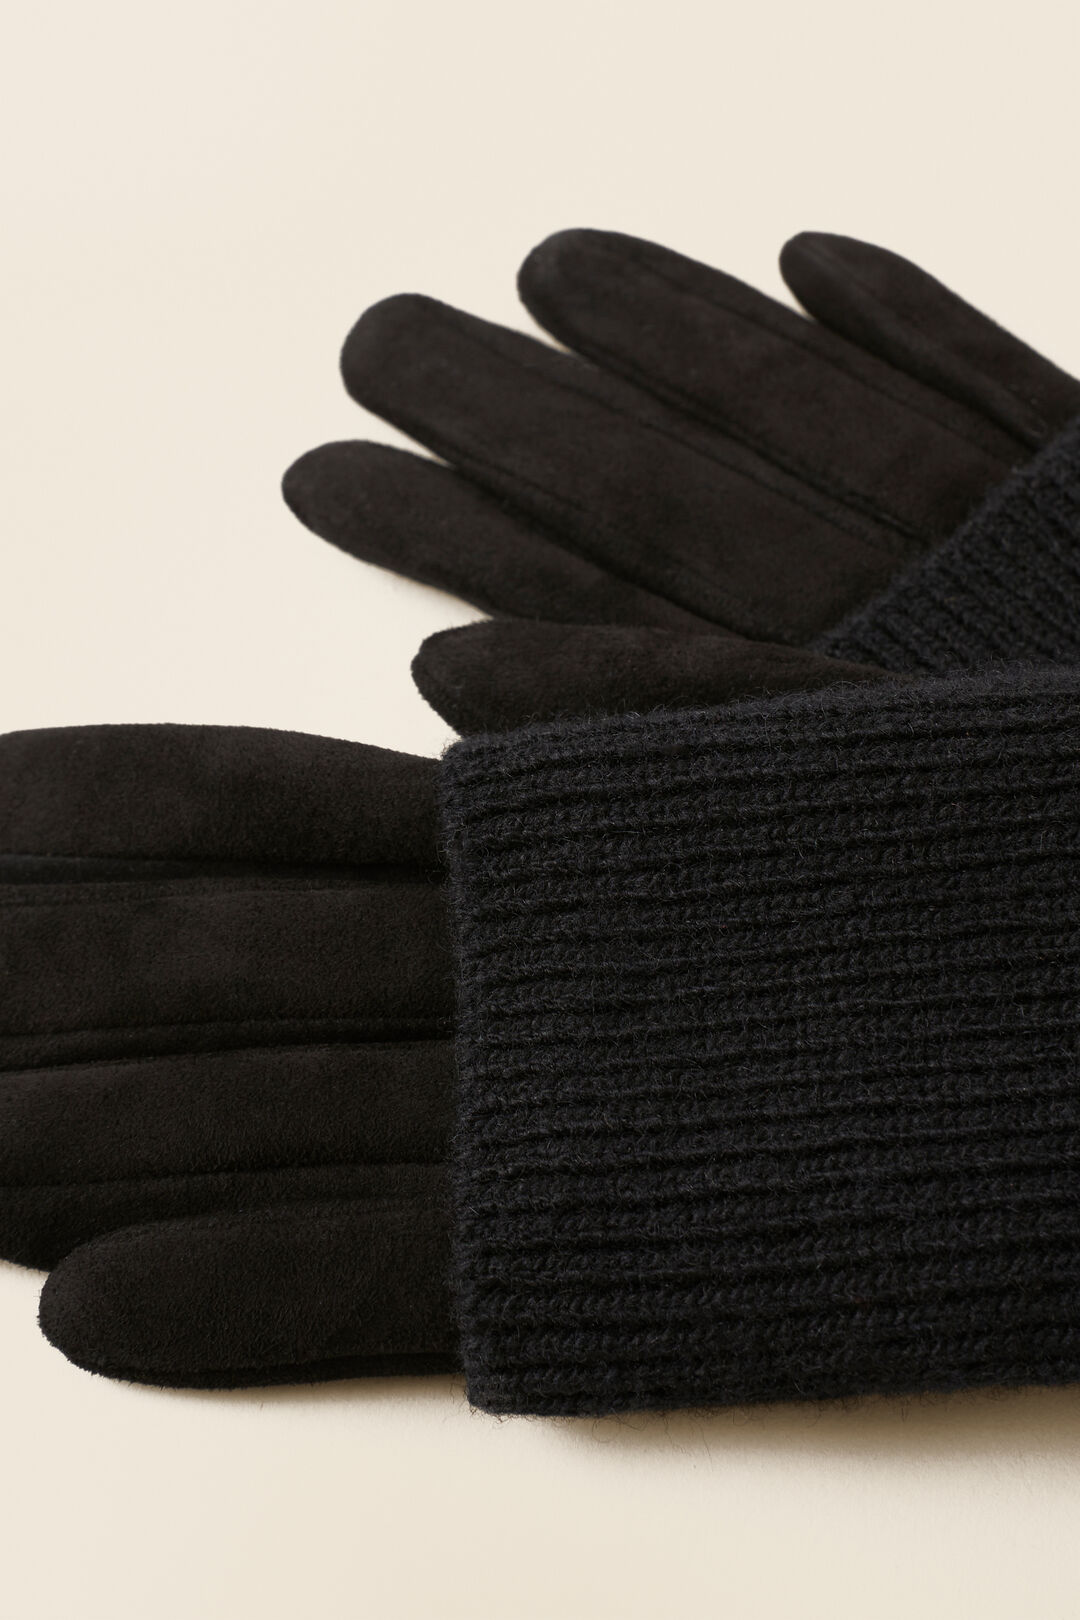 Suede Knit Spliced Gloves  Black  hi-res